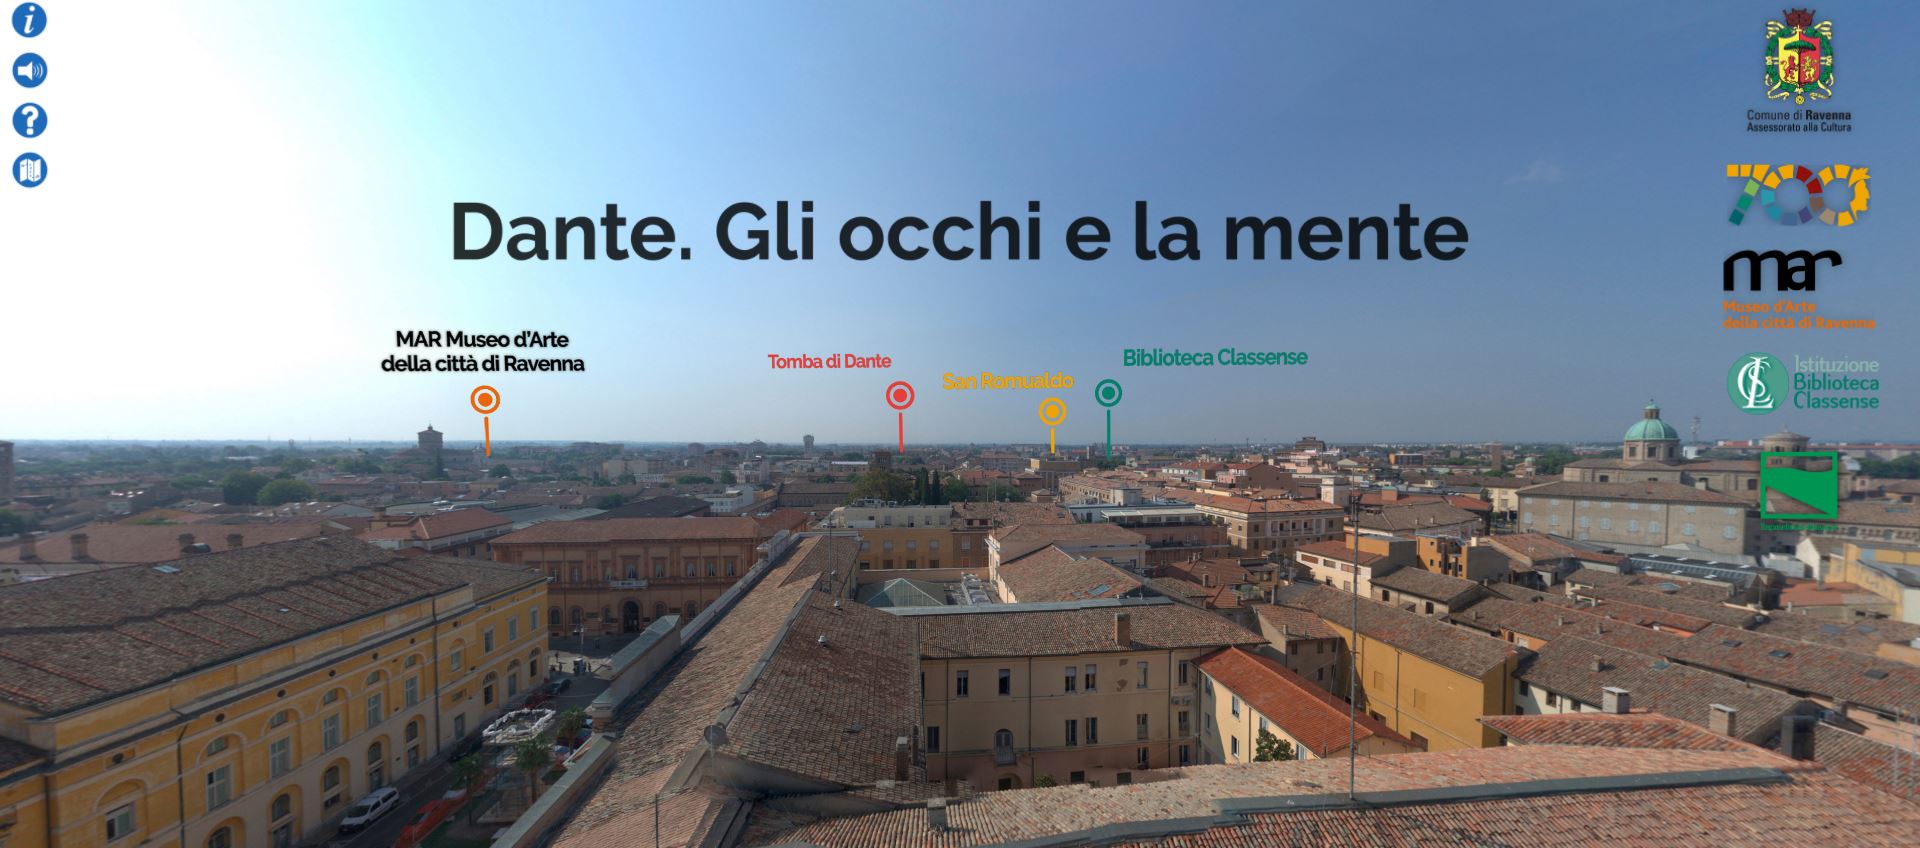 Dante a Ravenna, luoghi e versi in un virtual tour